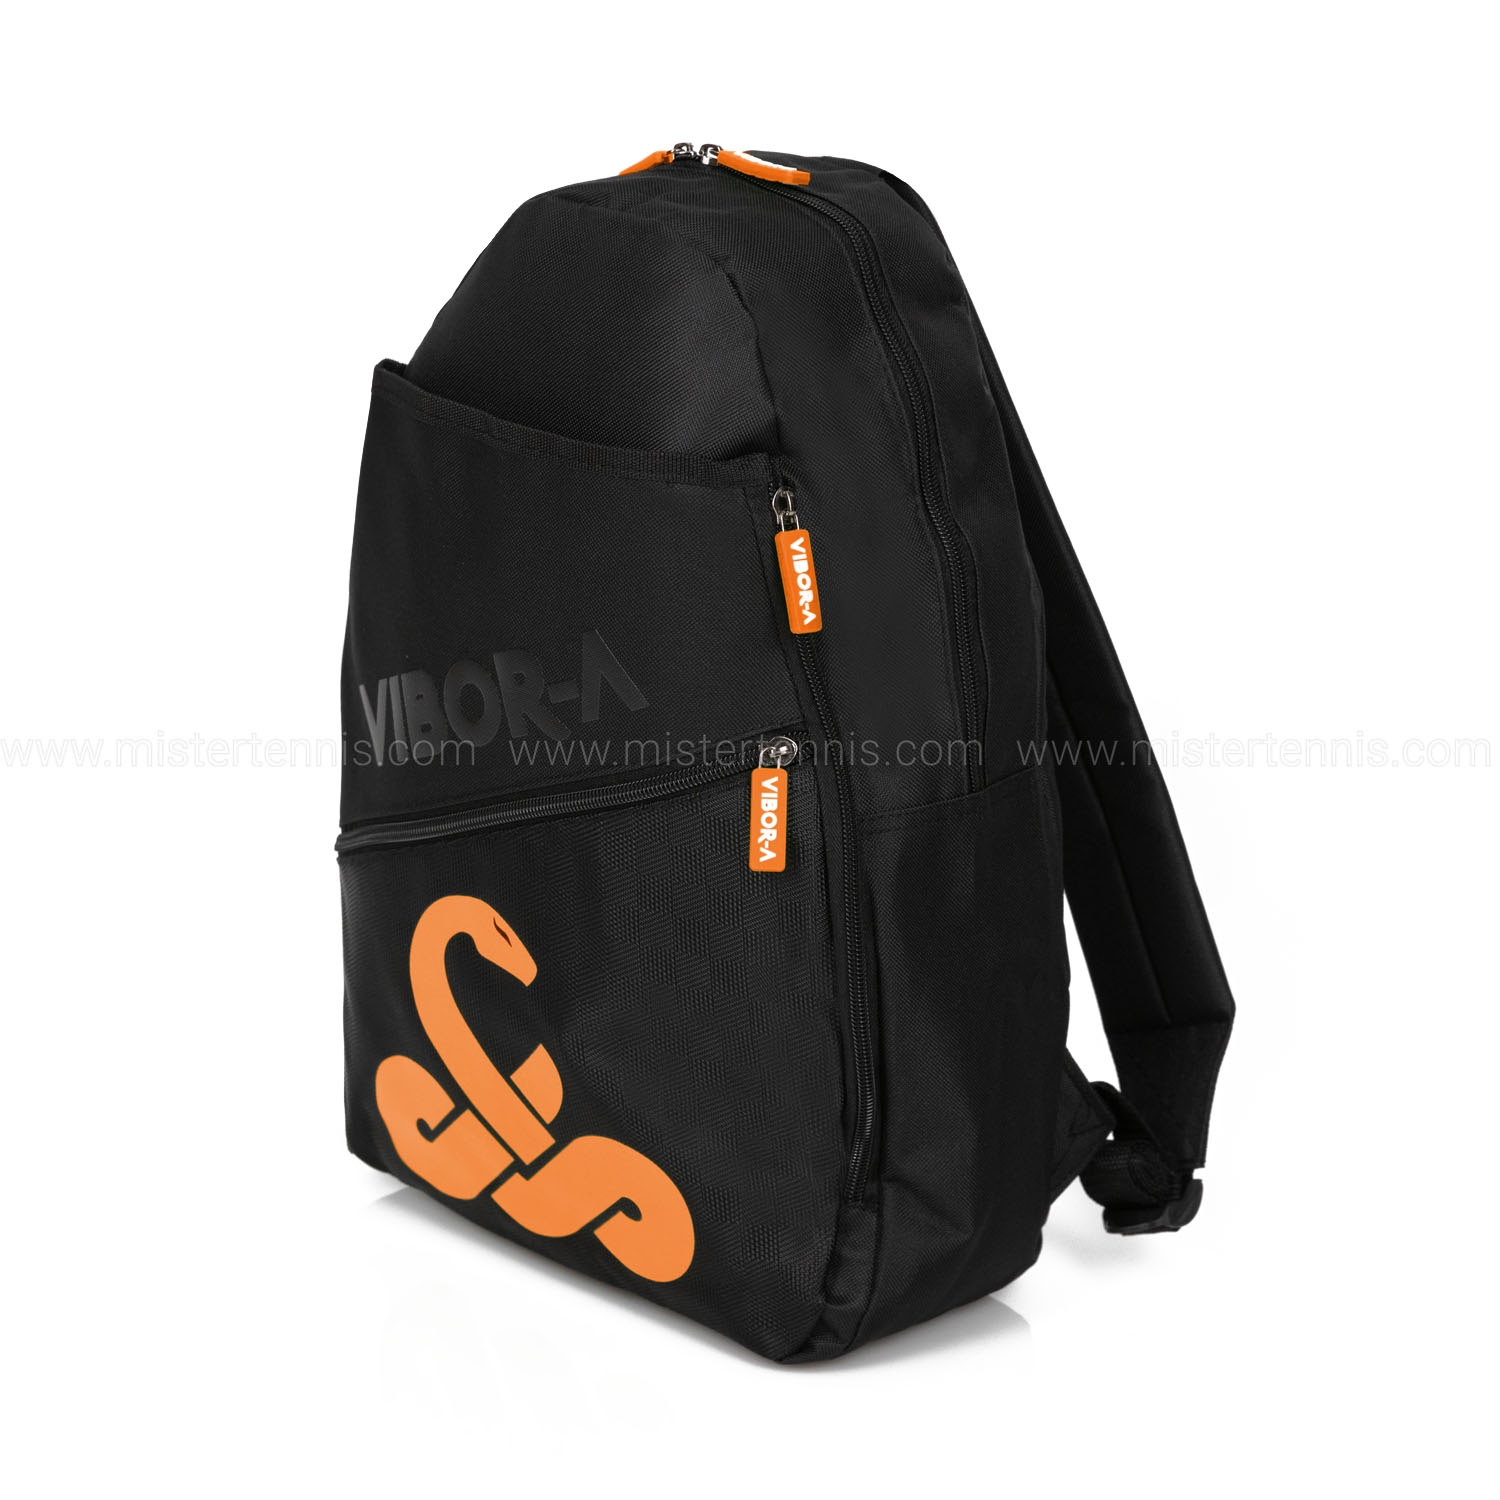 Vibor-A Arco Iris Backpack - Naranja